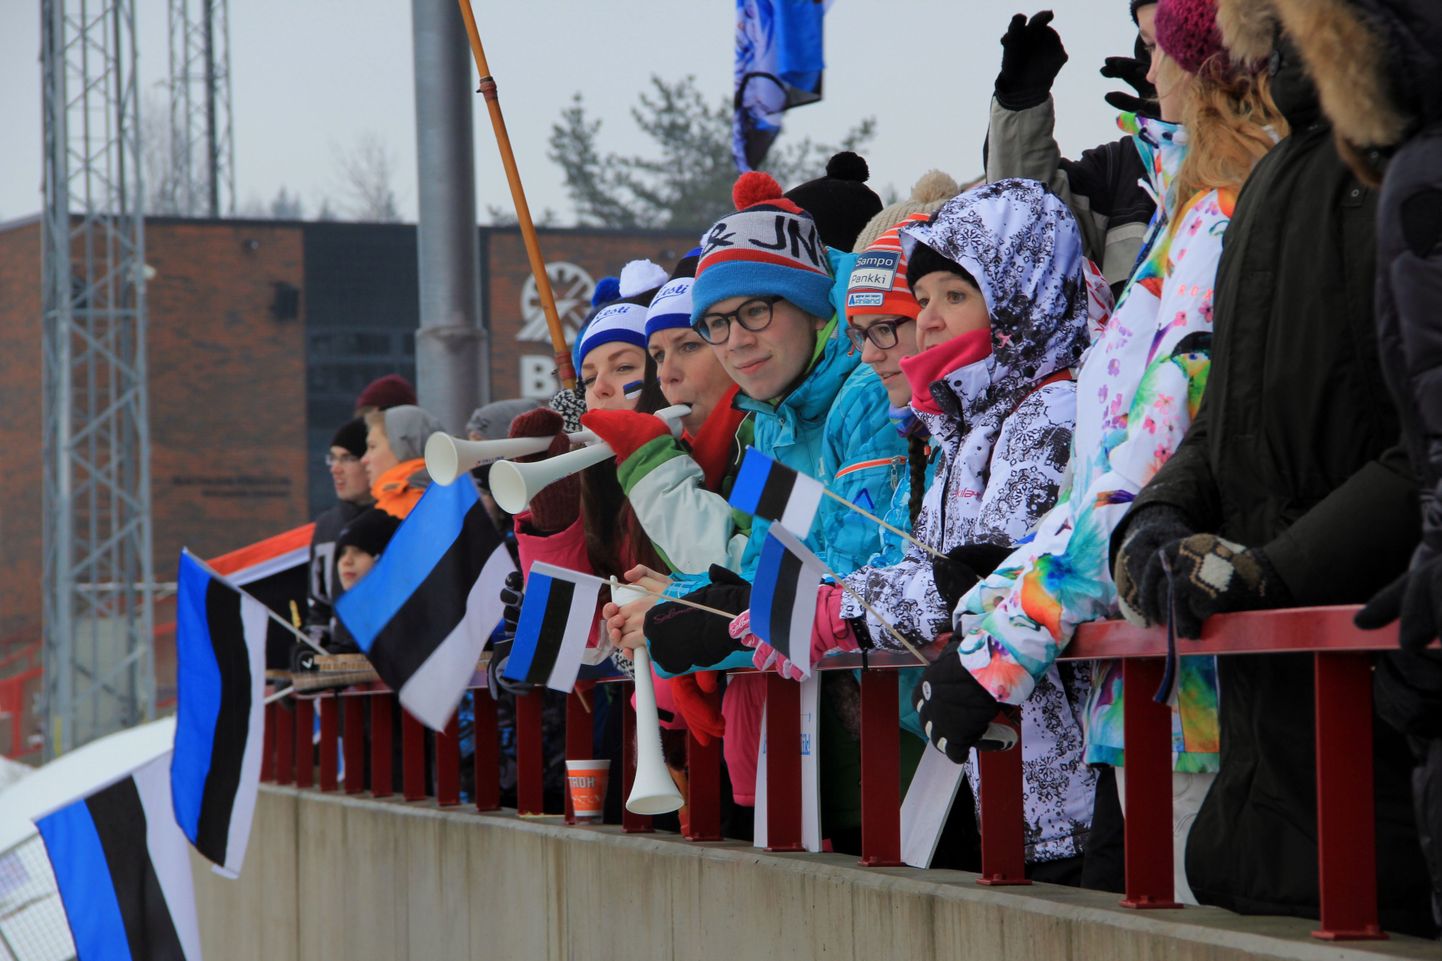 Eesti Suusaliit sai 30 000 eurot 18.–19. veebruaril FISi Otepää maailmakarika etapi korraldamiseks murdmaasuusatamises